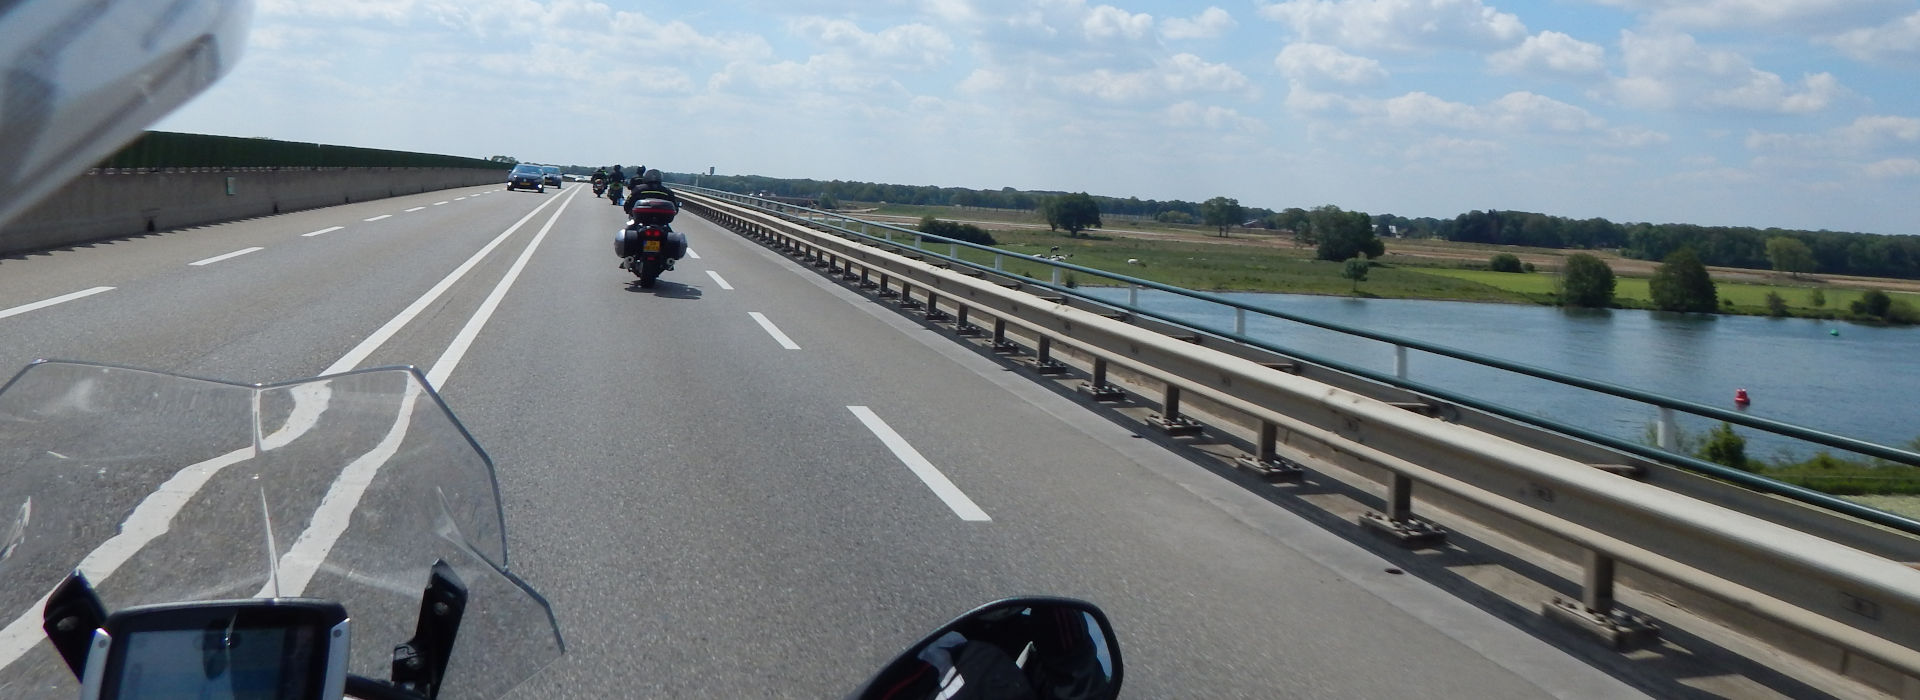 Motorrijbewijspoint Rijswijk  motorrijbewijs binnen 1 week